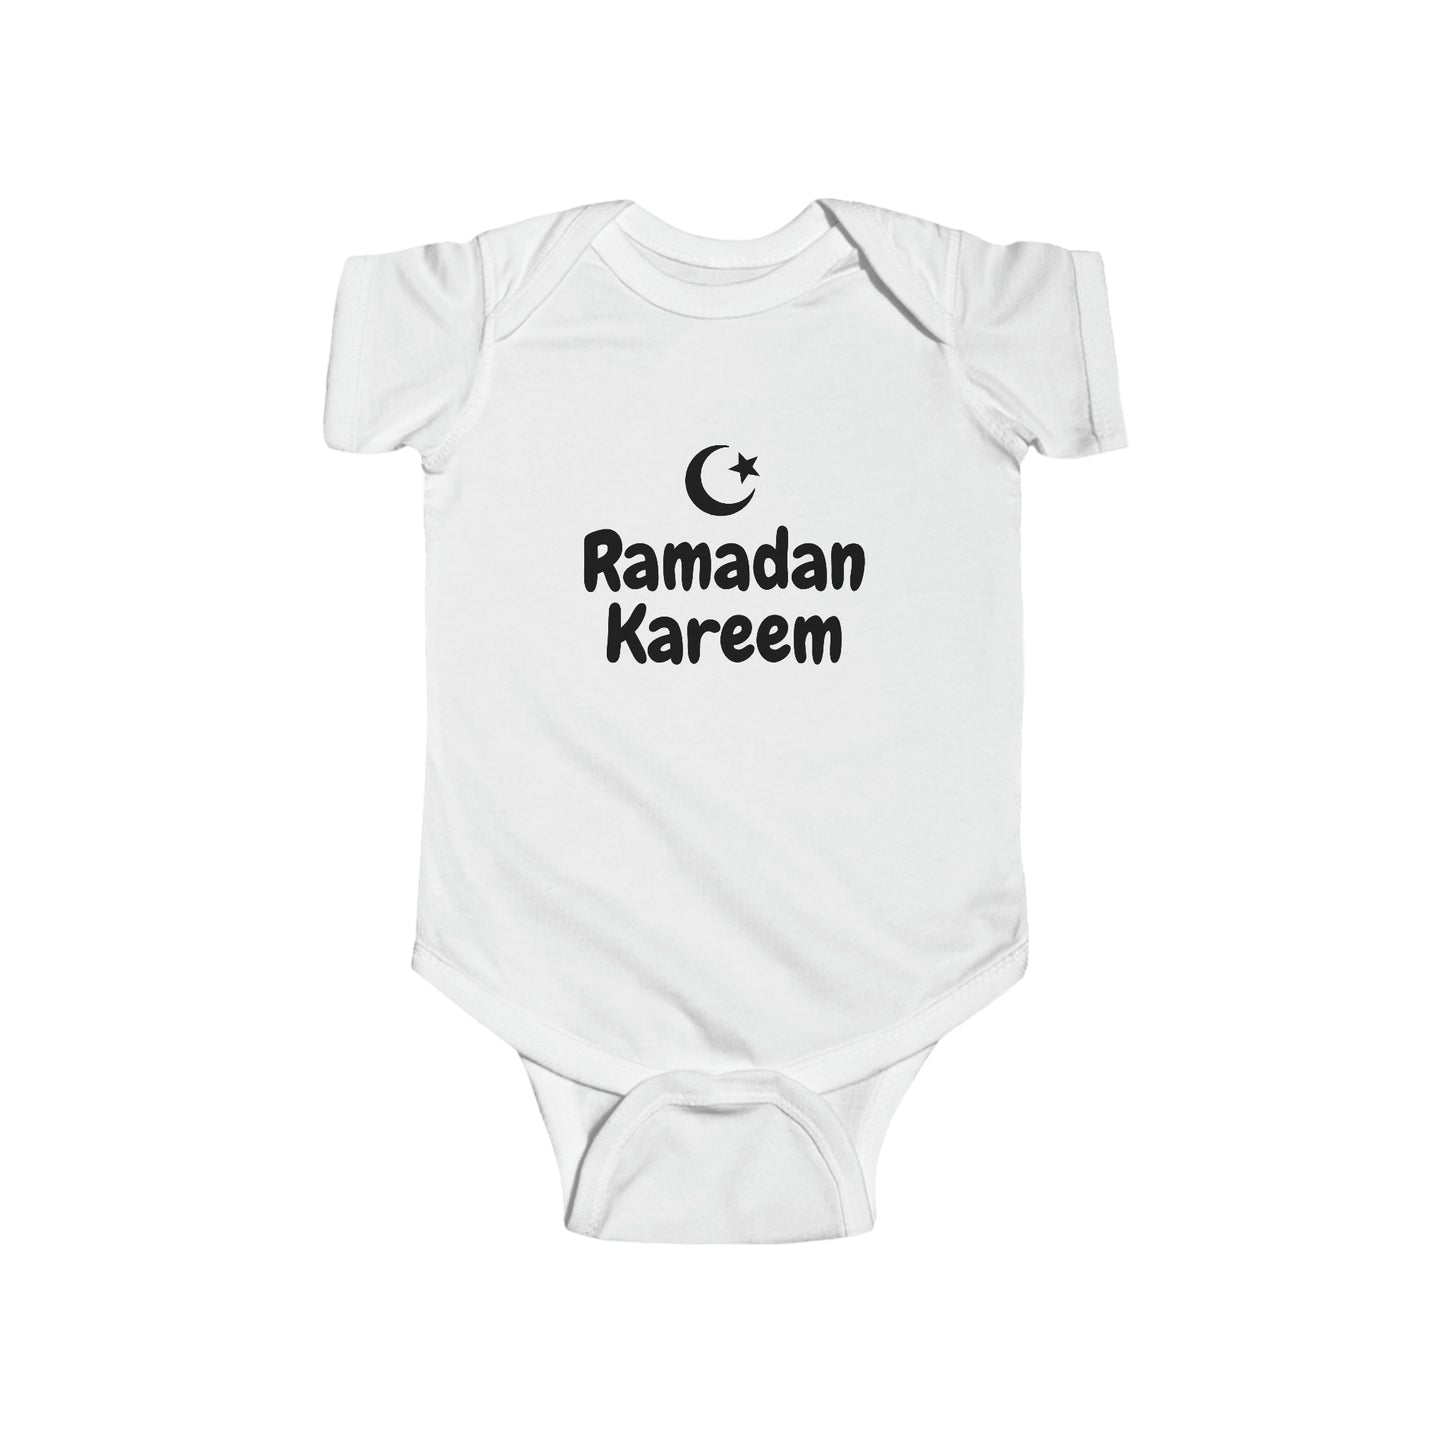 Bebe’s Ramadan Kareem